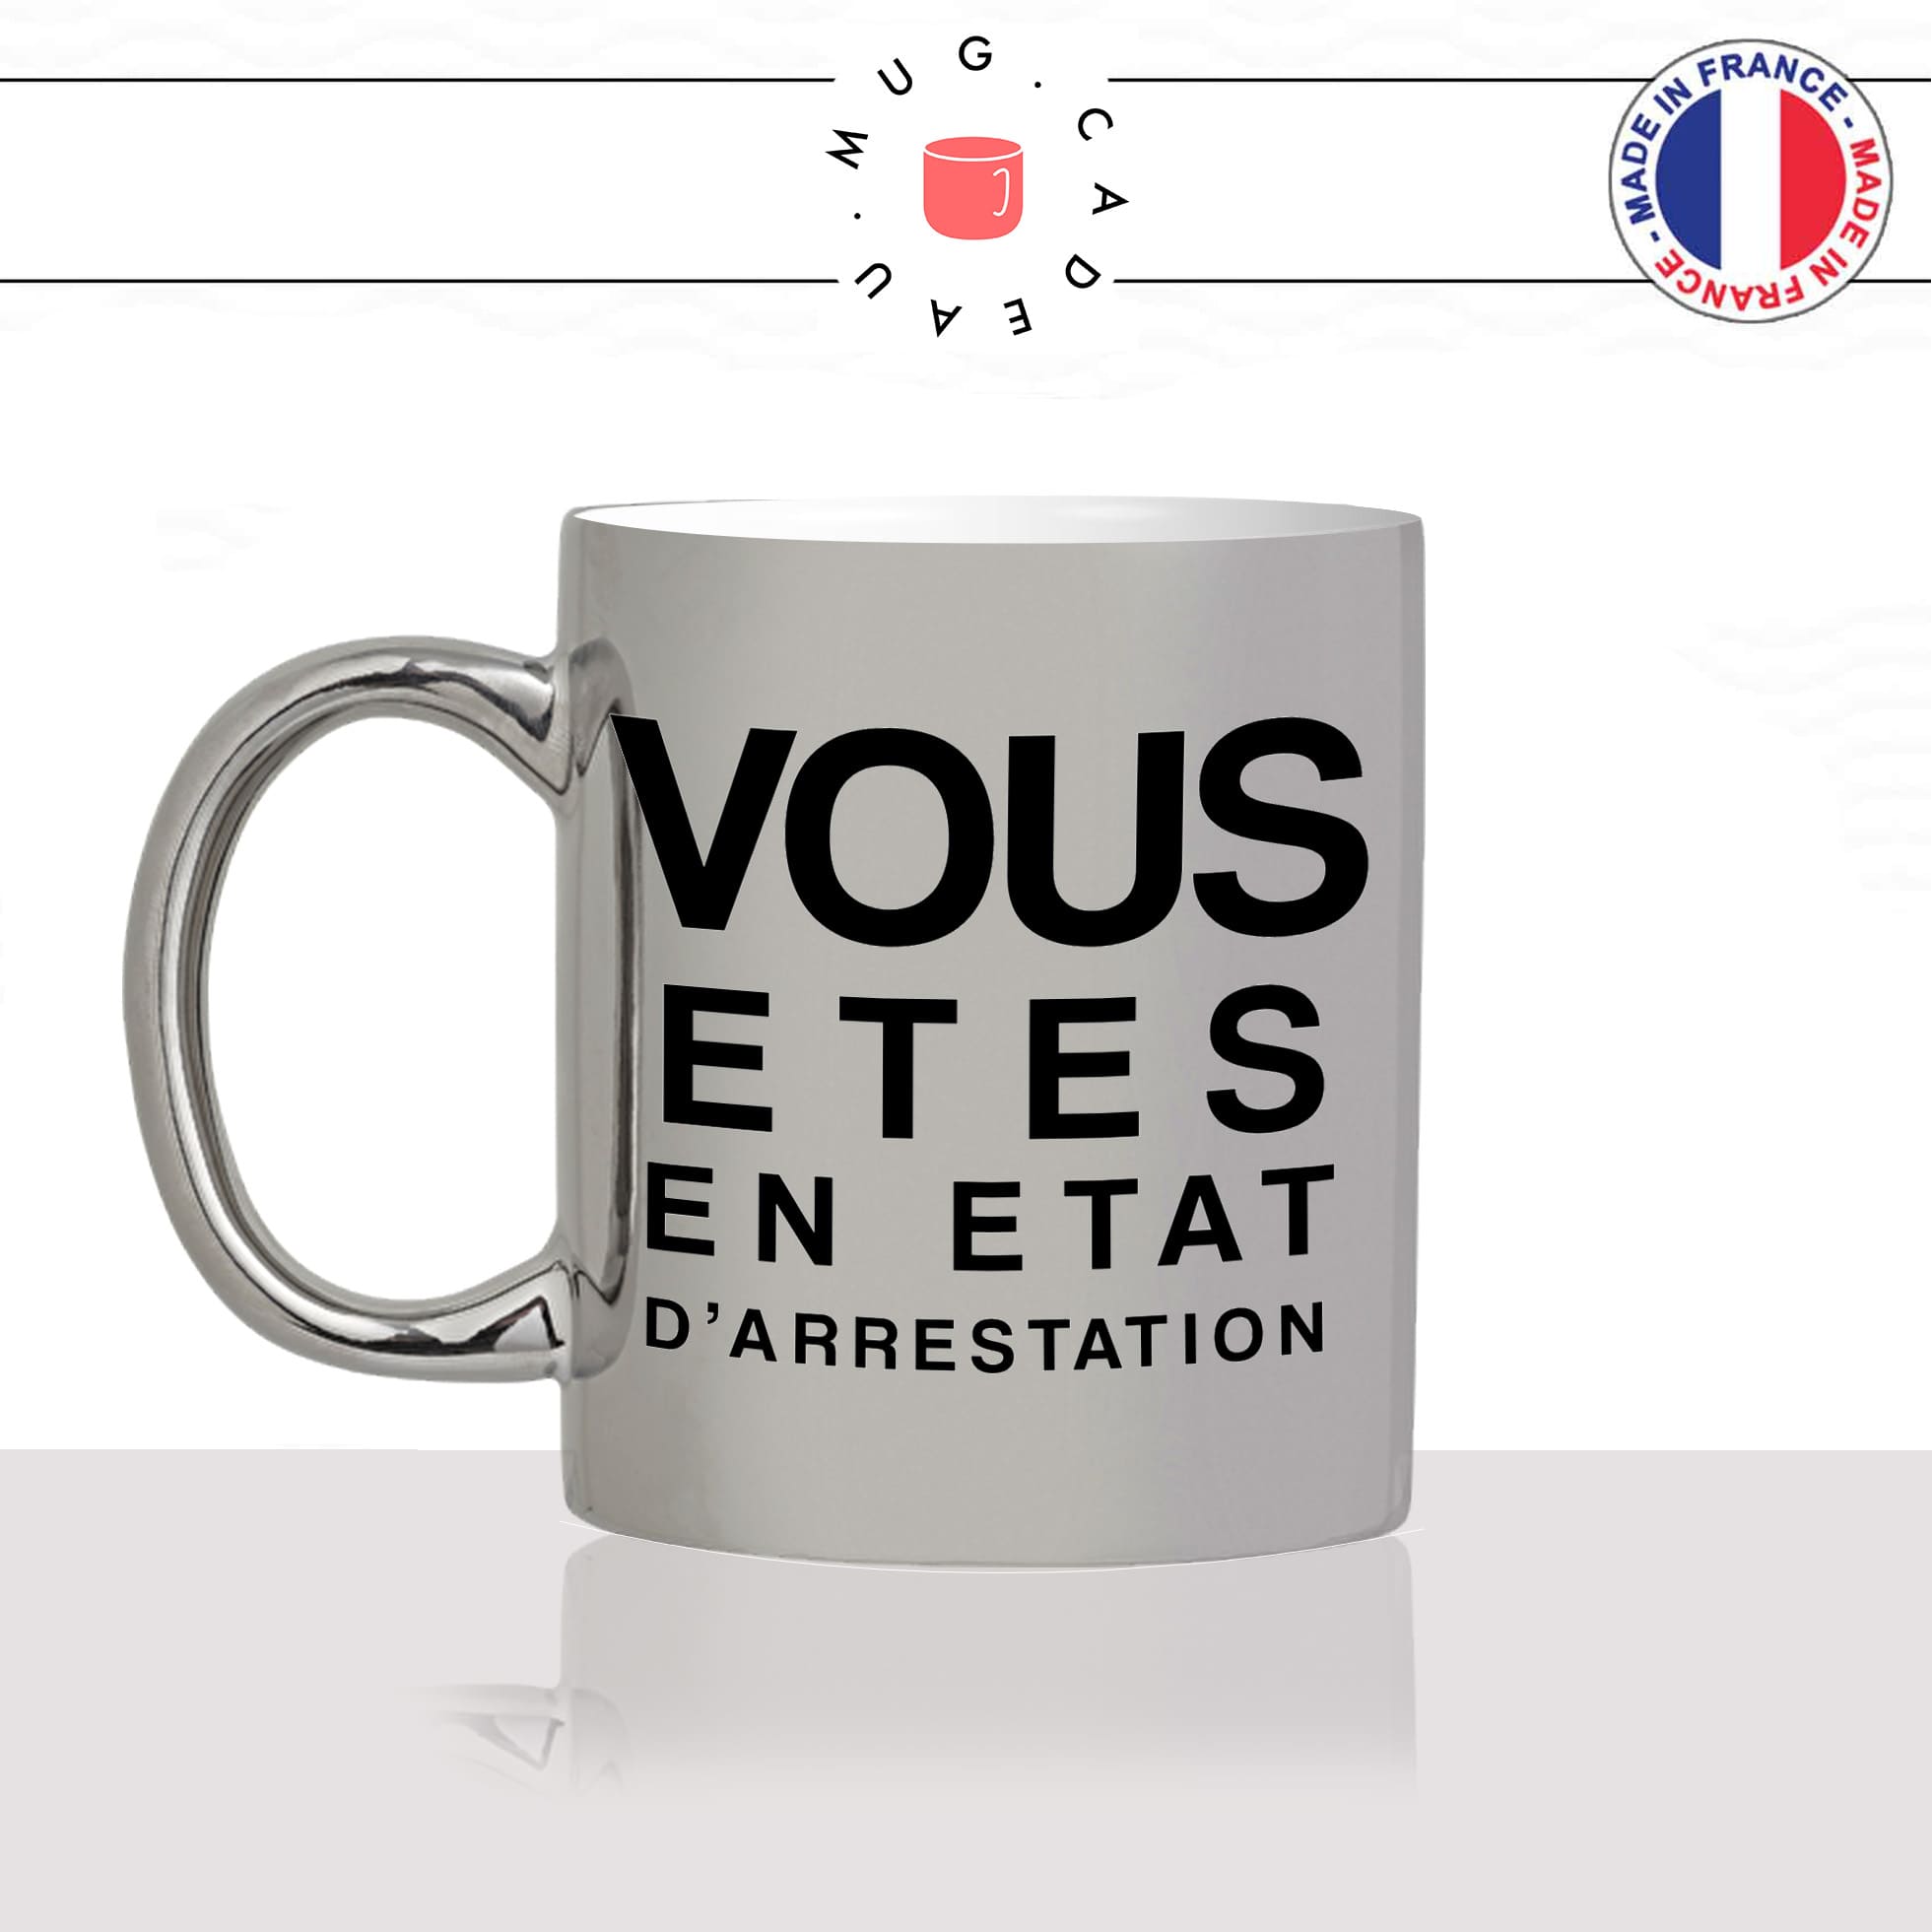 mug-tasse-argenté-silver-vous-etes-en-etat-darrestation-policier-fonctionnaire-de-police-travail-métier-fun-cool-café-thé-idée-cadeau-original